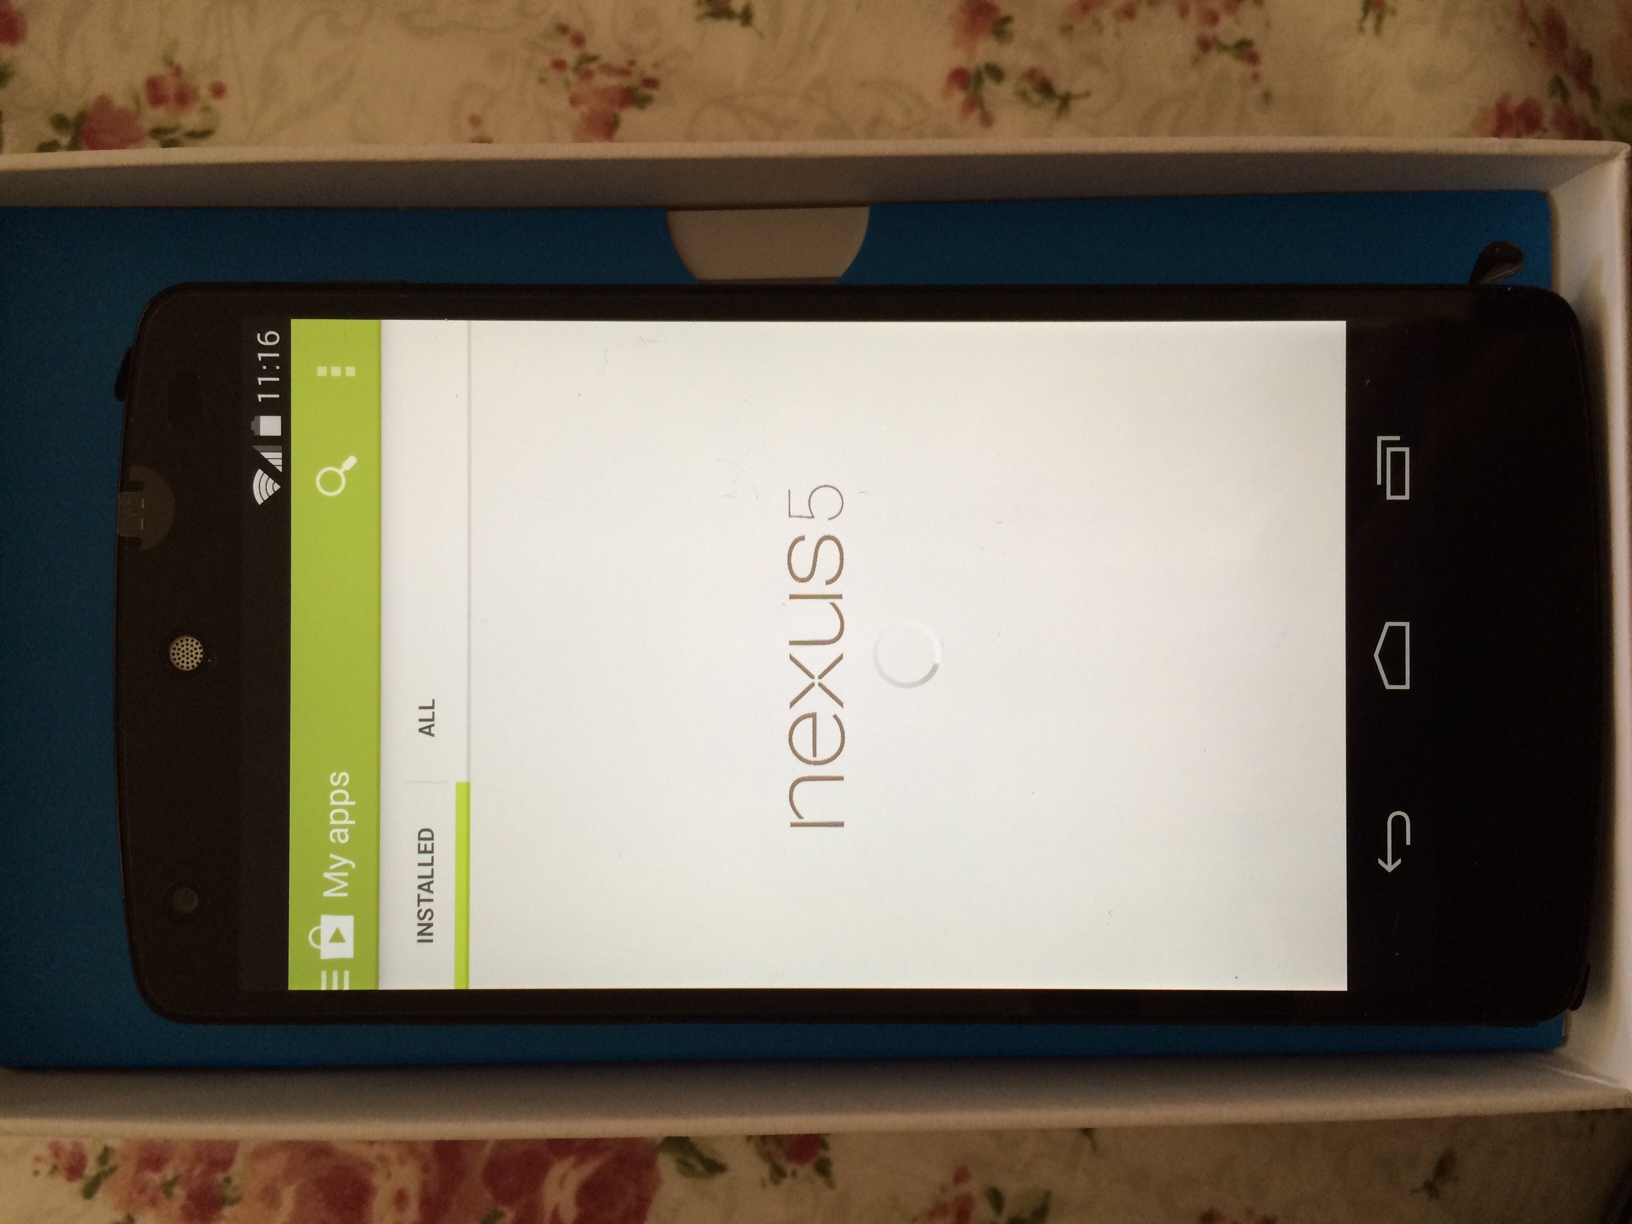  Nexus 5 ile ilgili sorulariniz